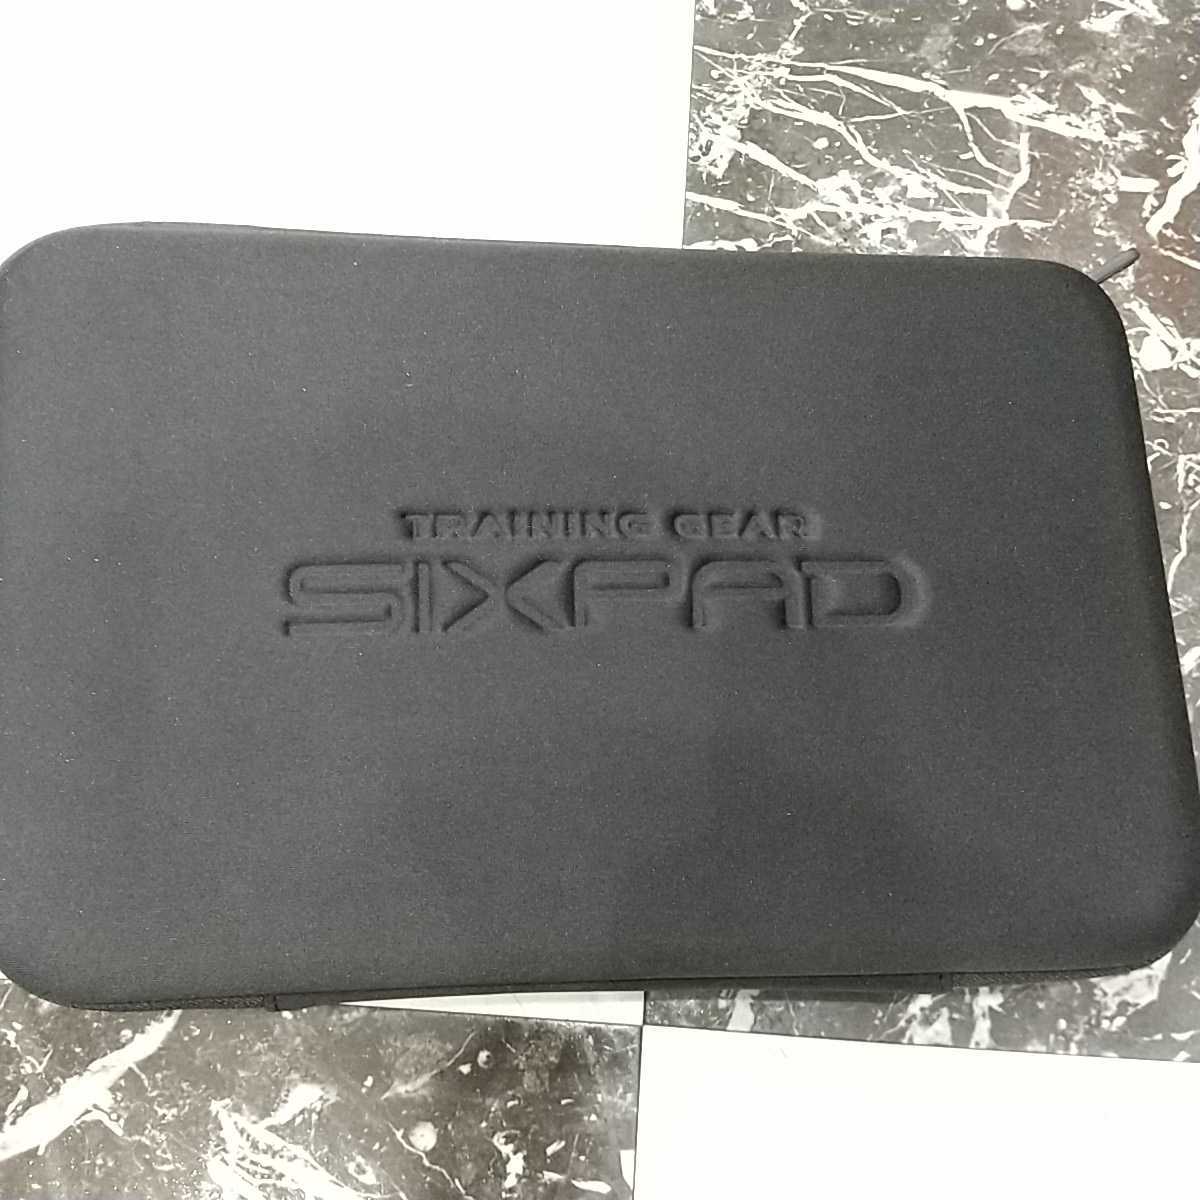 最高の品質の 正規品 シックスパッド SIXPAD パワースーツライトコア